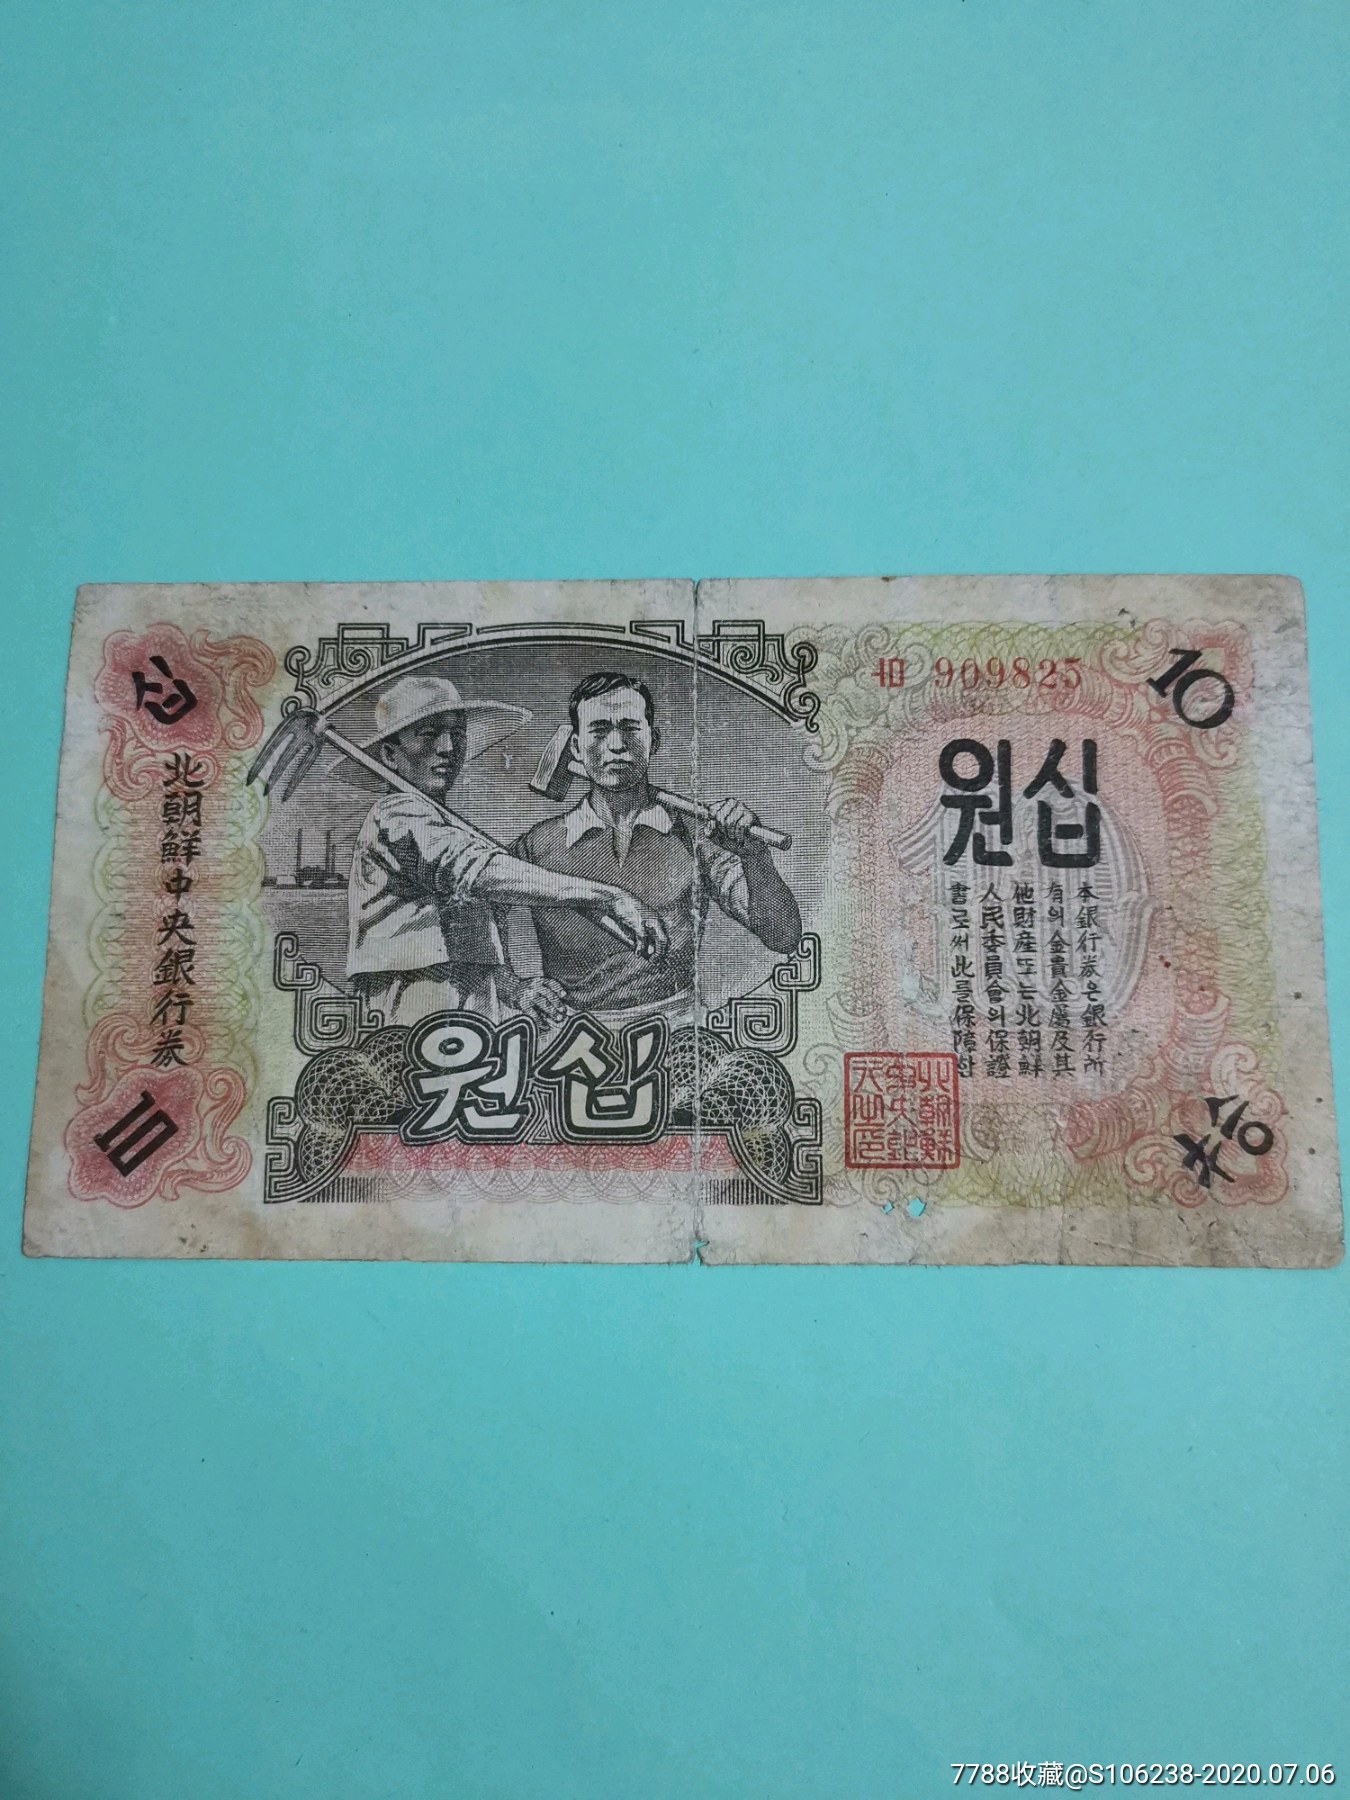 抗美援朝珍贵币北朝鲜中银行券10元中朝文水印原版志愿军在朝鲜用过请